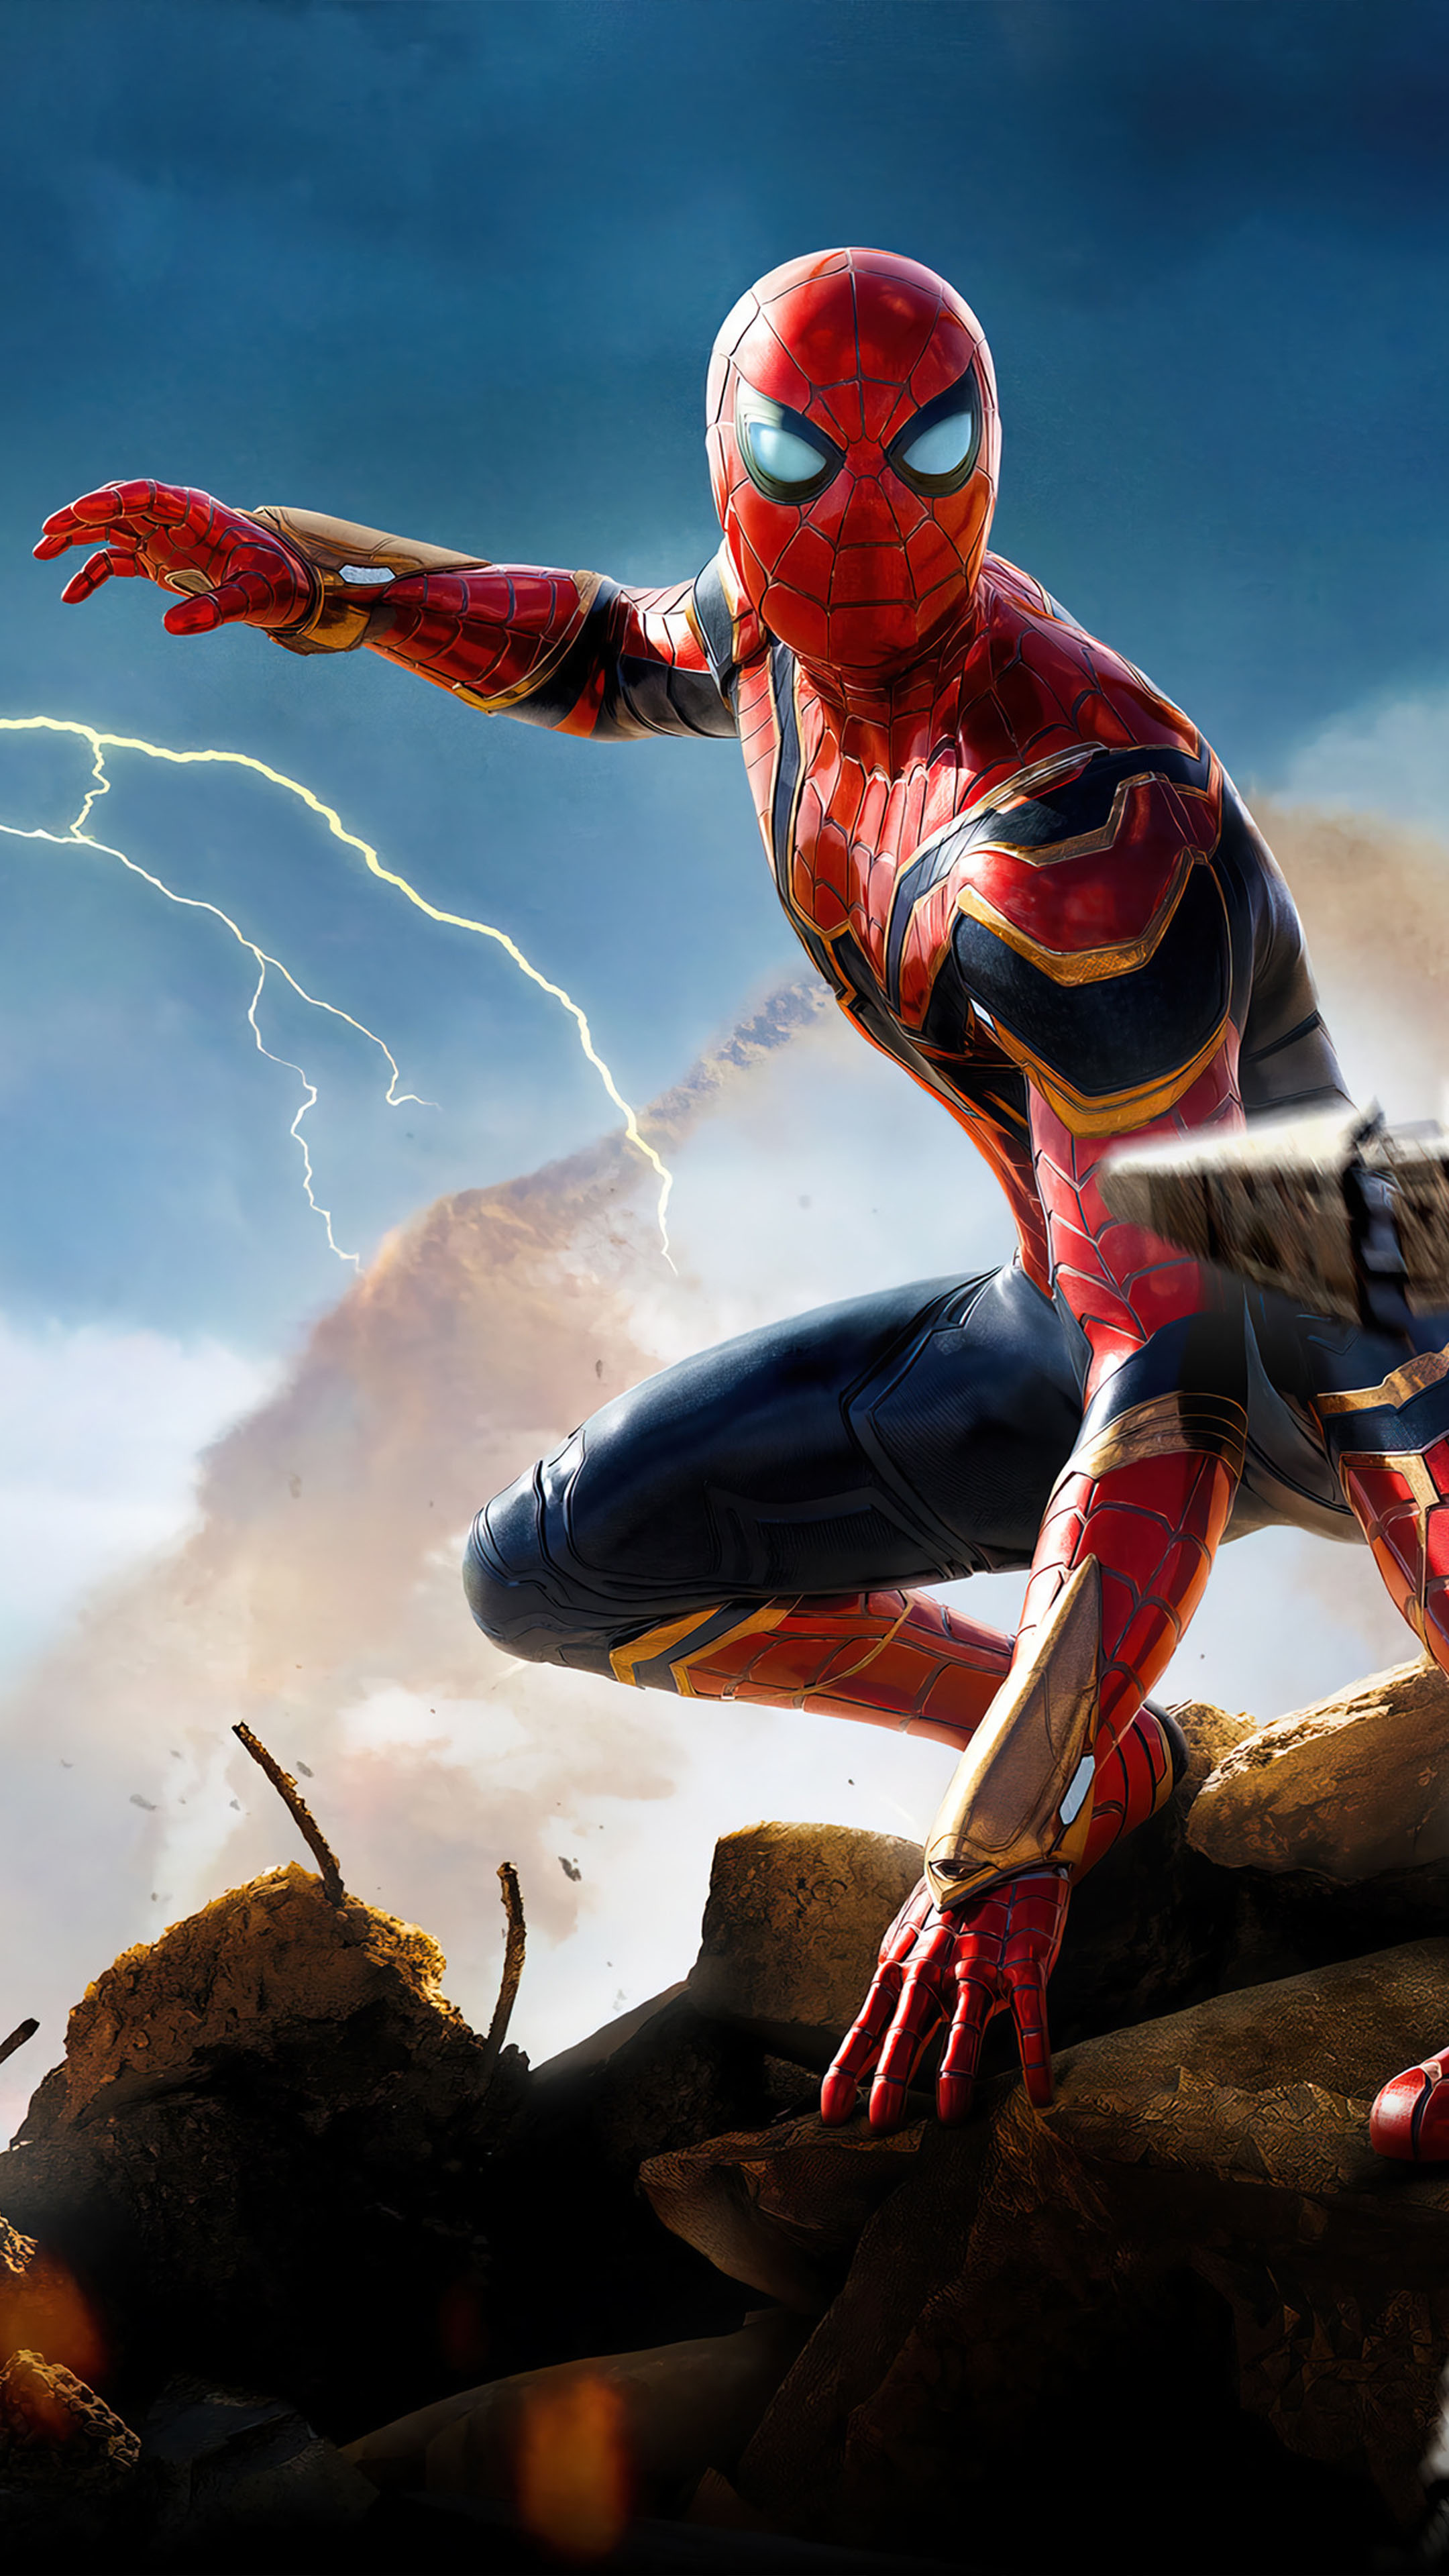 Hãy thưởng thức hình nền Spiderman 4k tuyệt đẹp để trang trí cho màn hình của bạn. Sắc nét và đầy màu sắc, hình nền này sẽ khiến bạn vô cùng ấn tượng bởi sự chi tiết đến từng pixel. Tải ngay để đắm chìm trong thế giới siêu anh hùng Spiderman!